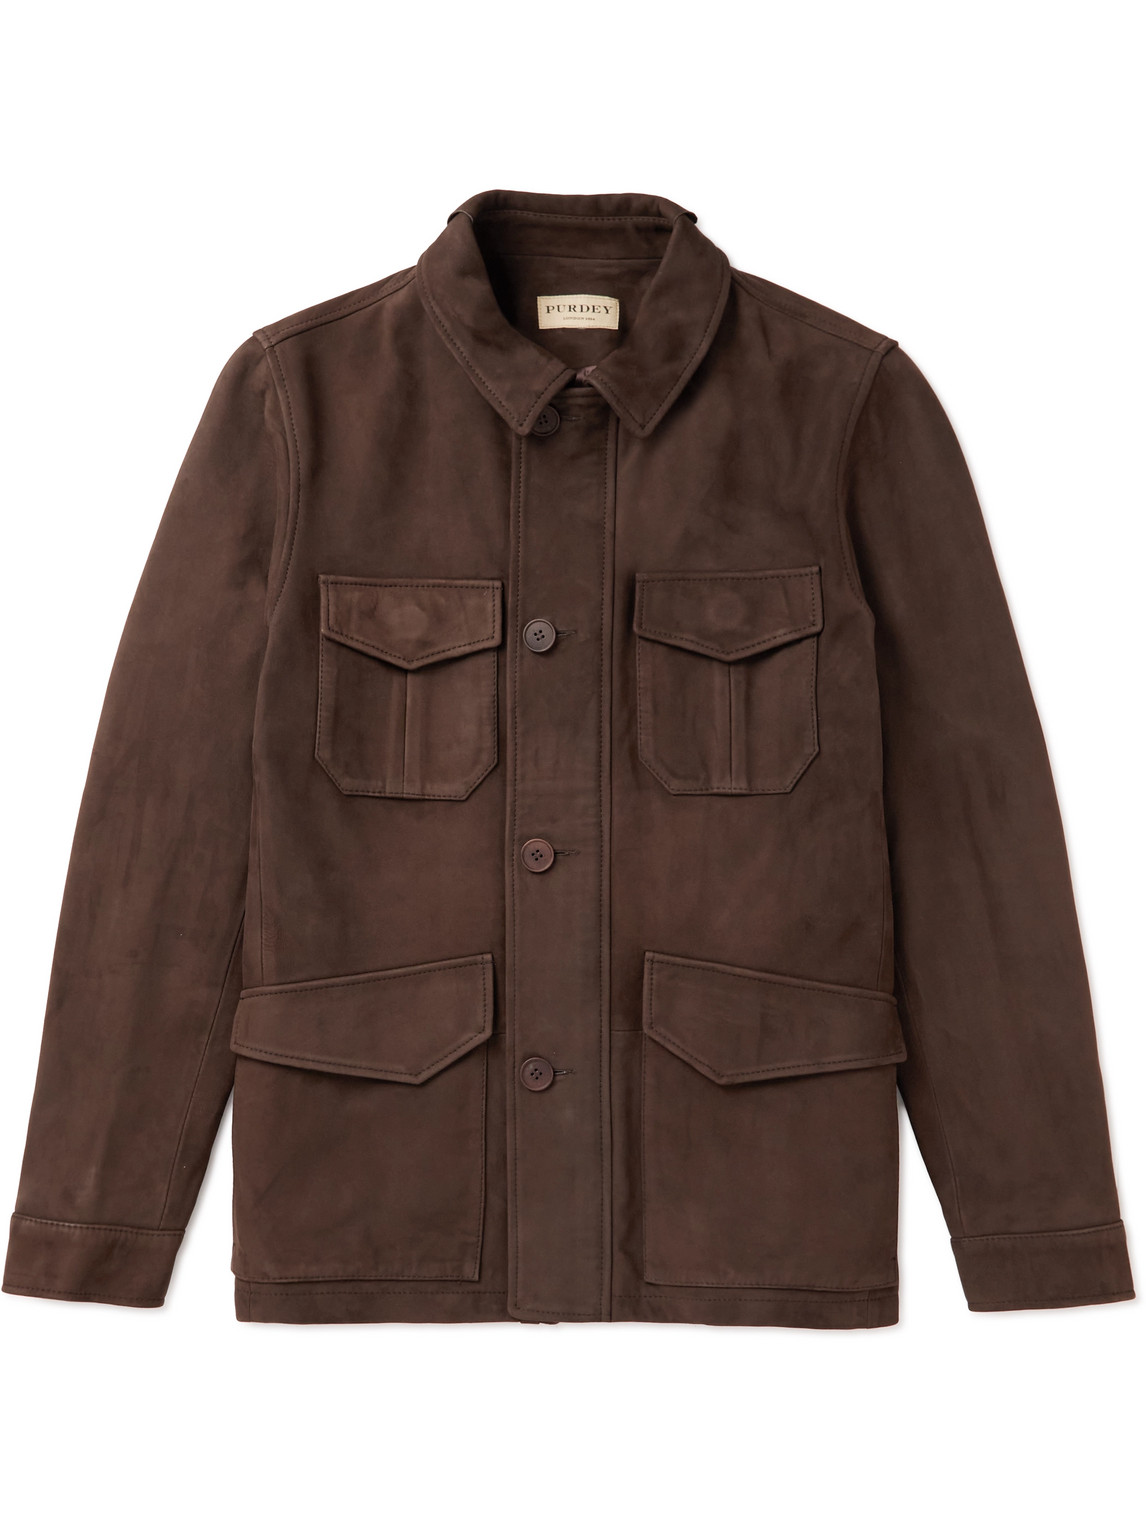 Purdey Kensington Nubuck Jacket In Brown